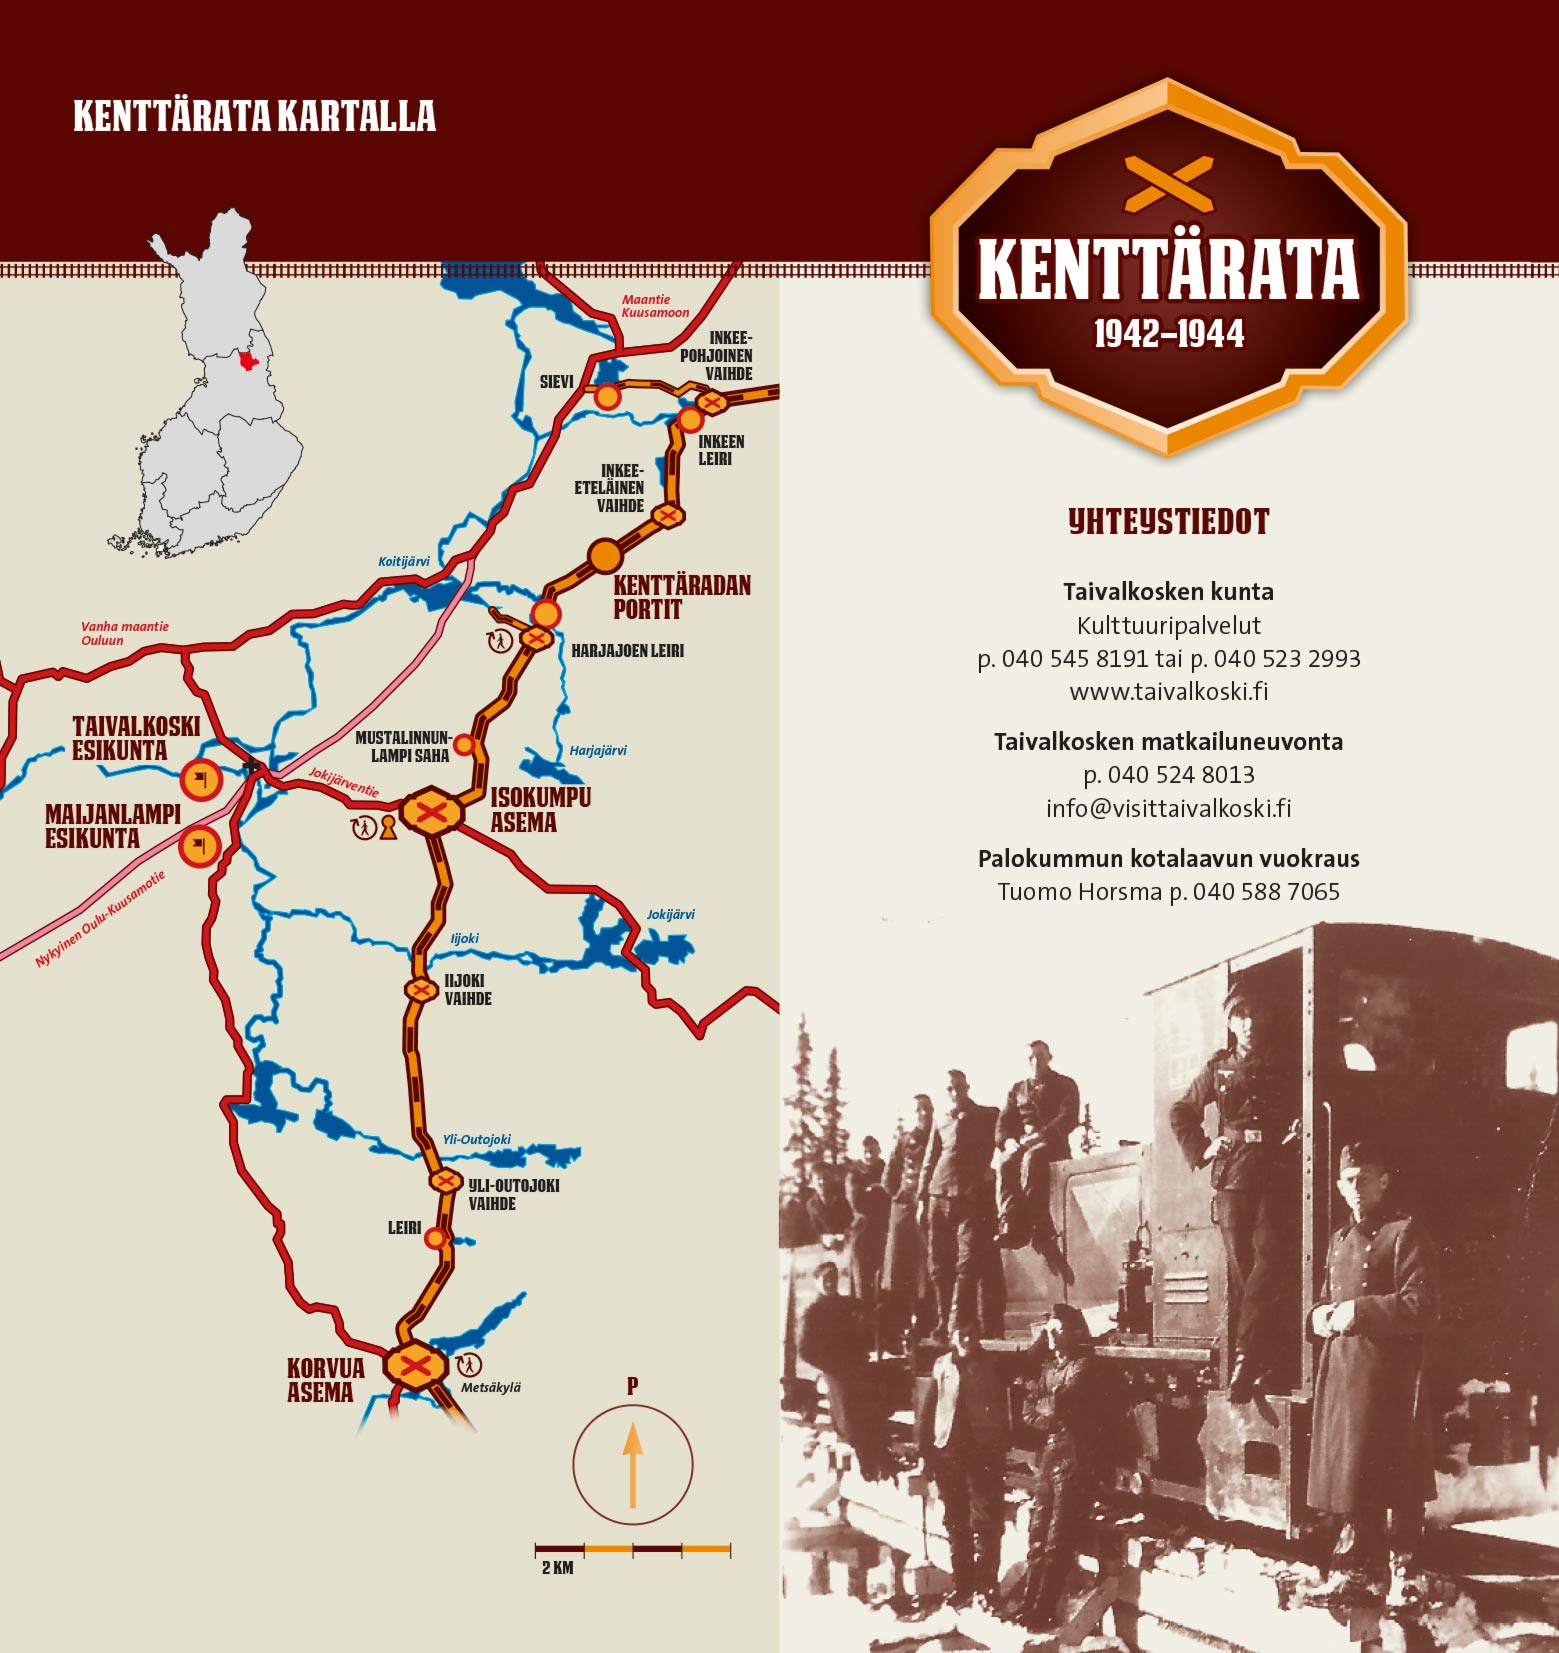 Kenttärata - Railway of the 2nd world war - Visit Taivalkoski, Finland